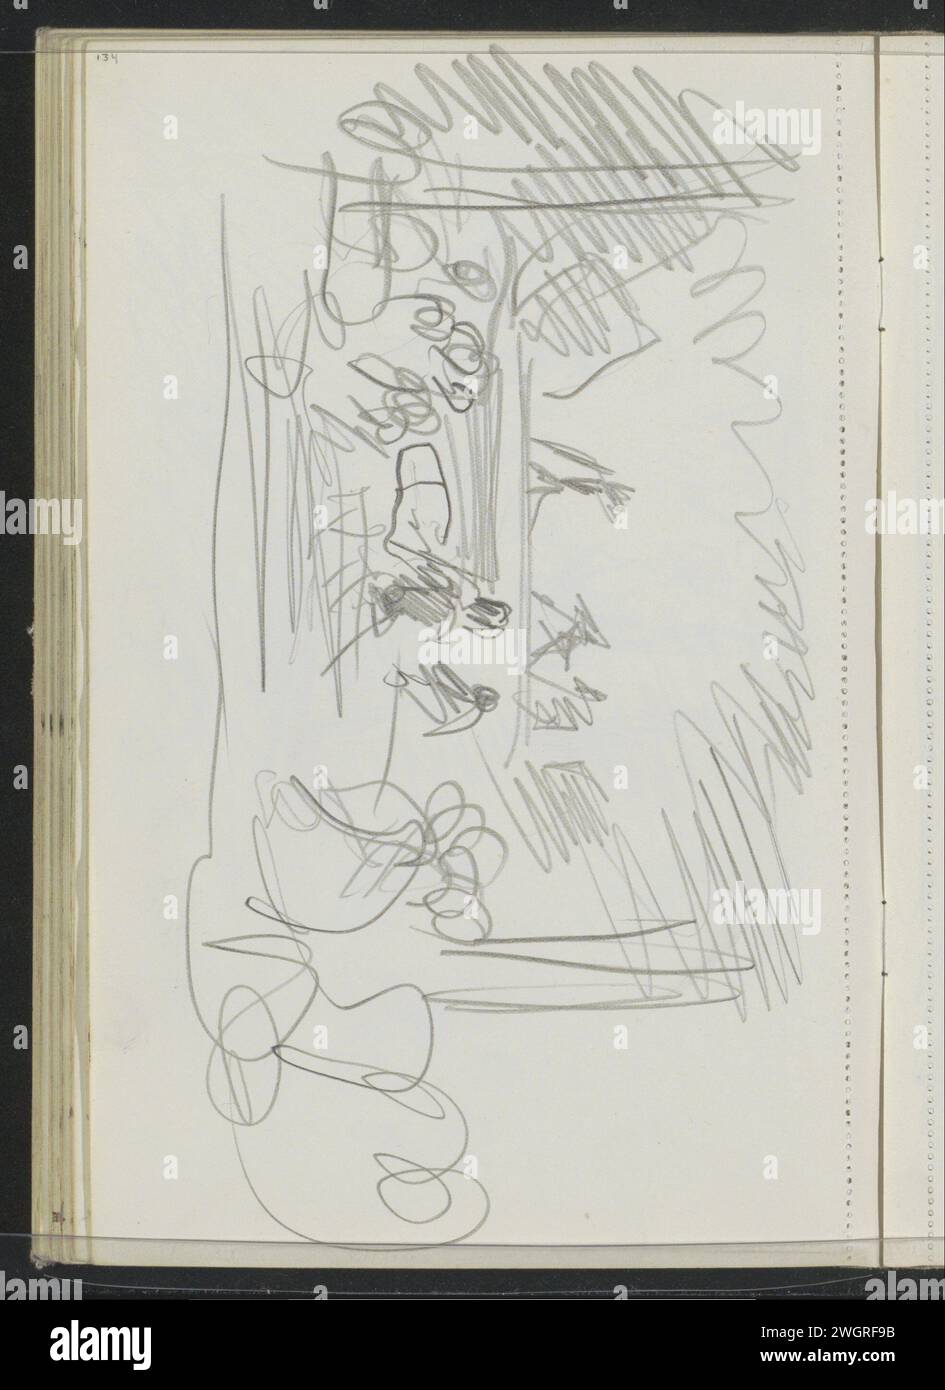 Show mit sitzendem Publikum, 1925 möglicherweise eine Wayang-Vorstellung. Seite 134 aus einem Skizzenbuch mit 74 Blättern. Indonesien Papier. Leistung des Bleistifts. Das Publikum  Kunstdarbietung Stockfoto